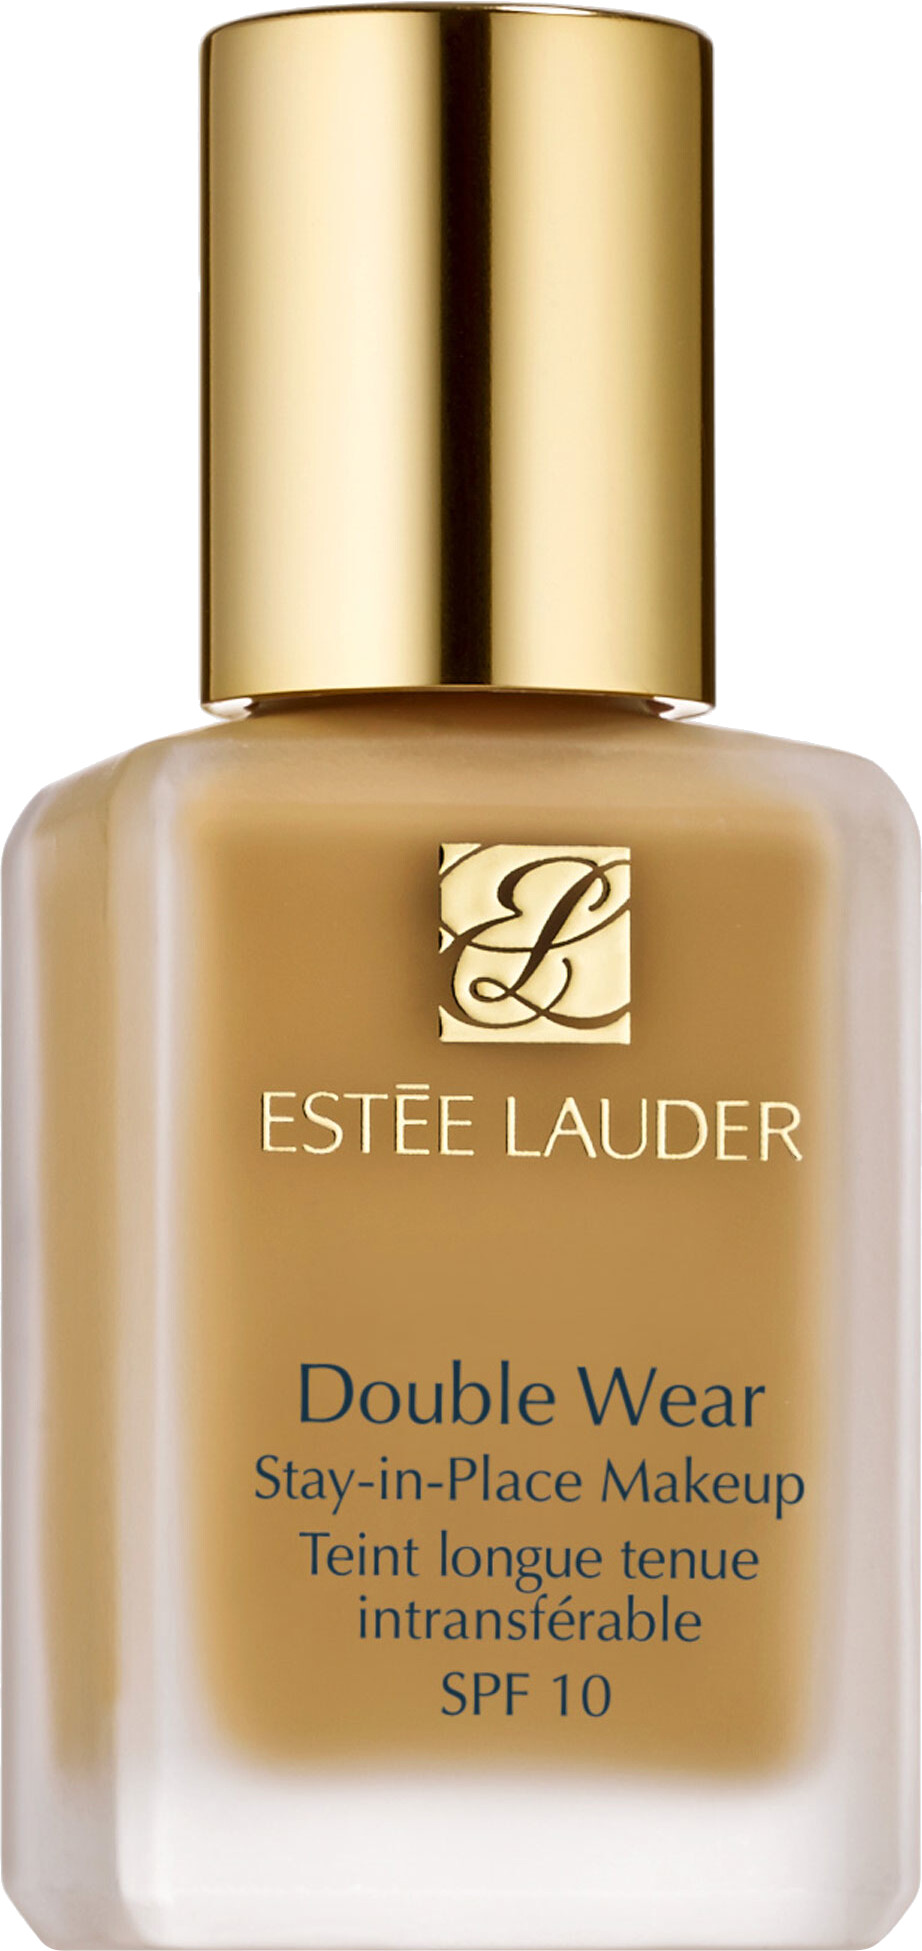 Estee Lauder Double Wear Stay-in-Place Foundation SPF10 30ml 3W2 - Cashew